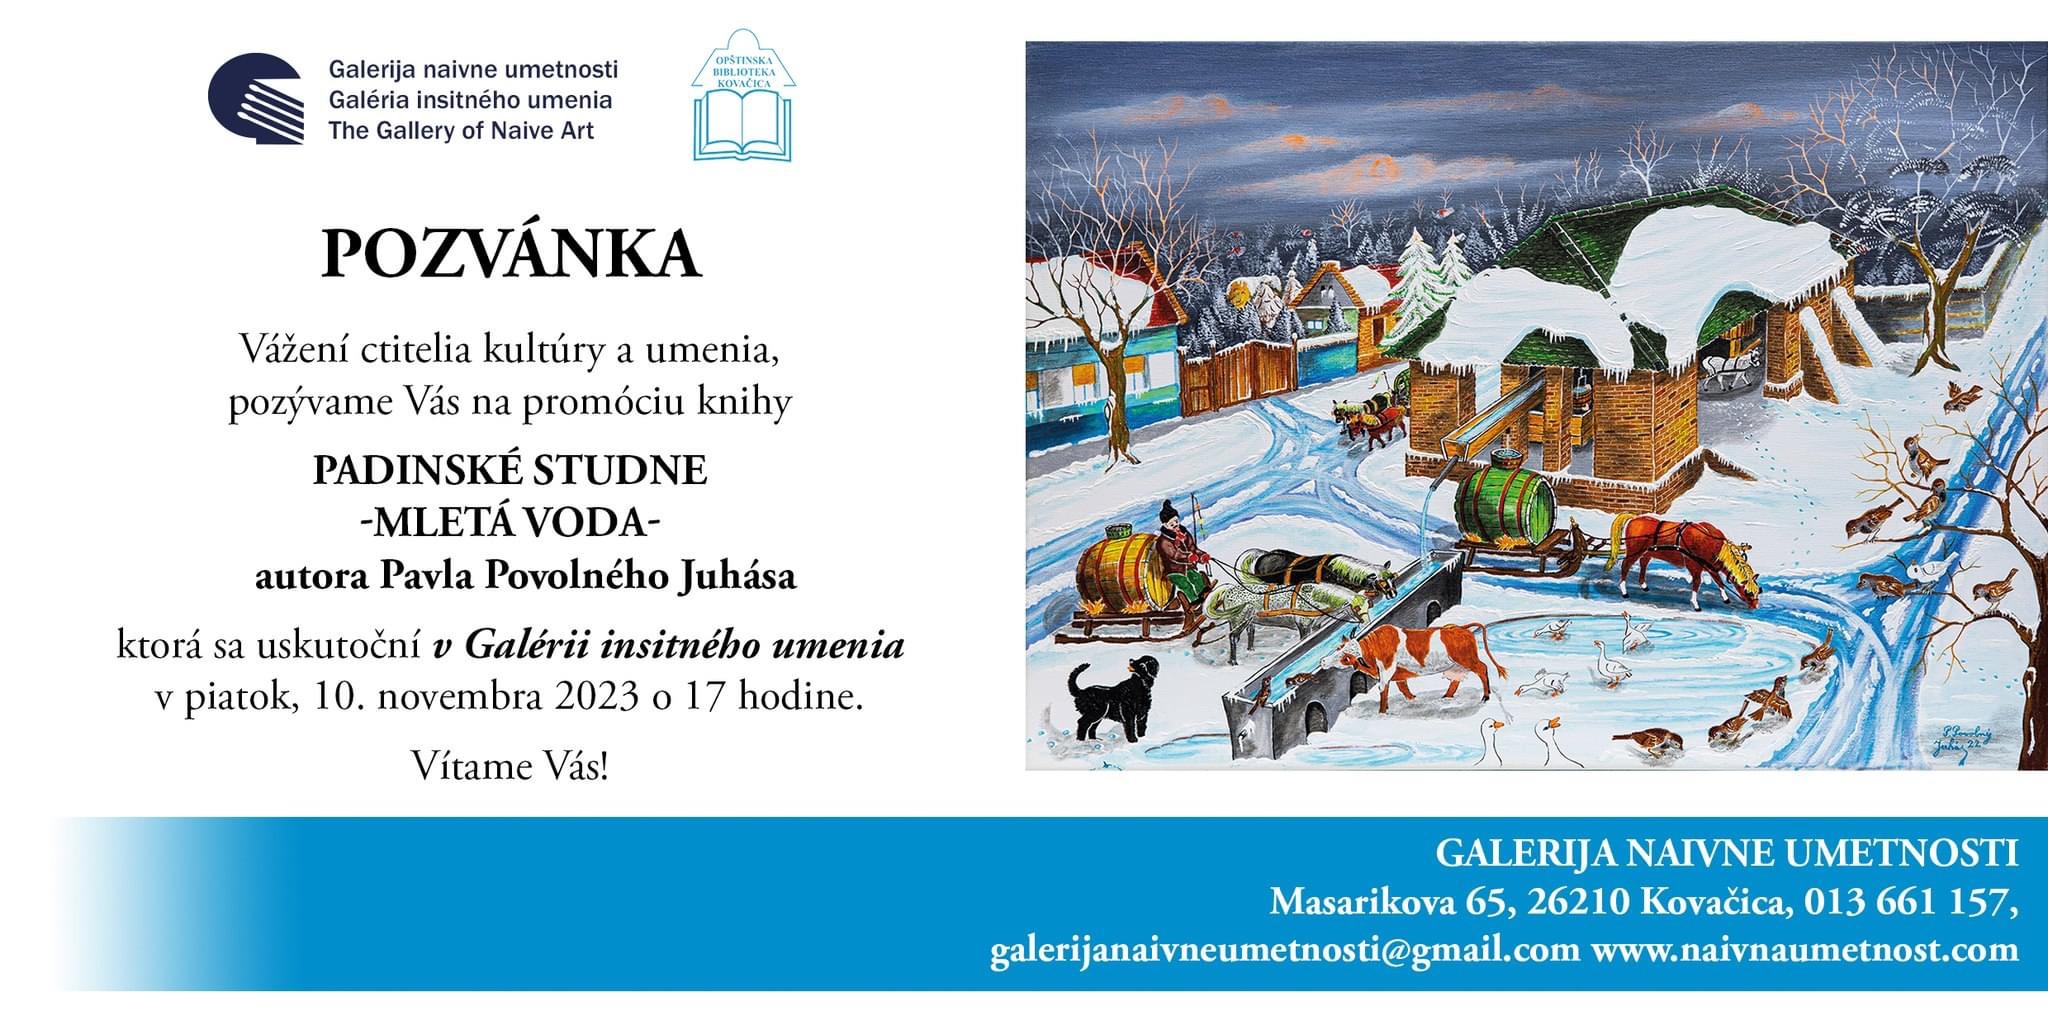 Kovačica: Izložba slika i promocija knjige autora Pavela Povolnog Juhasa 10. novembra